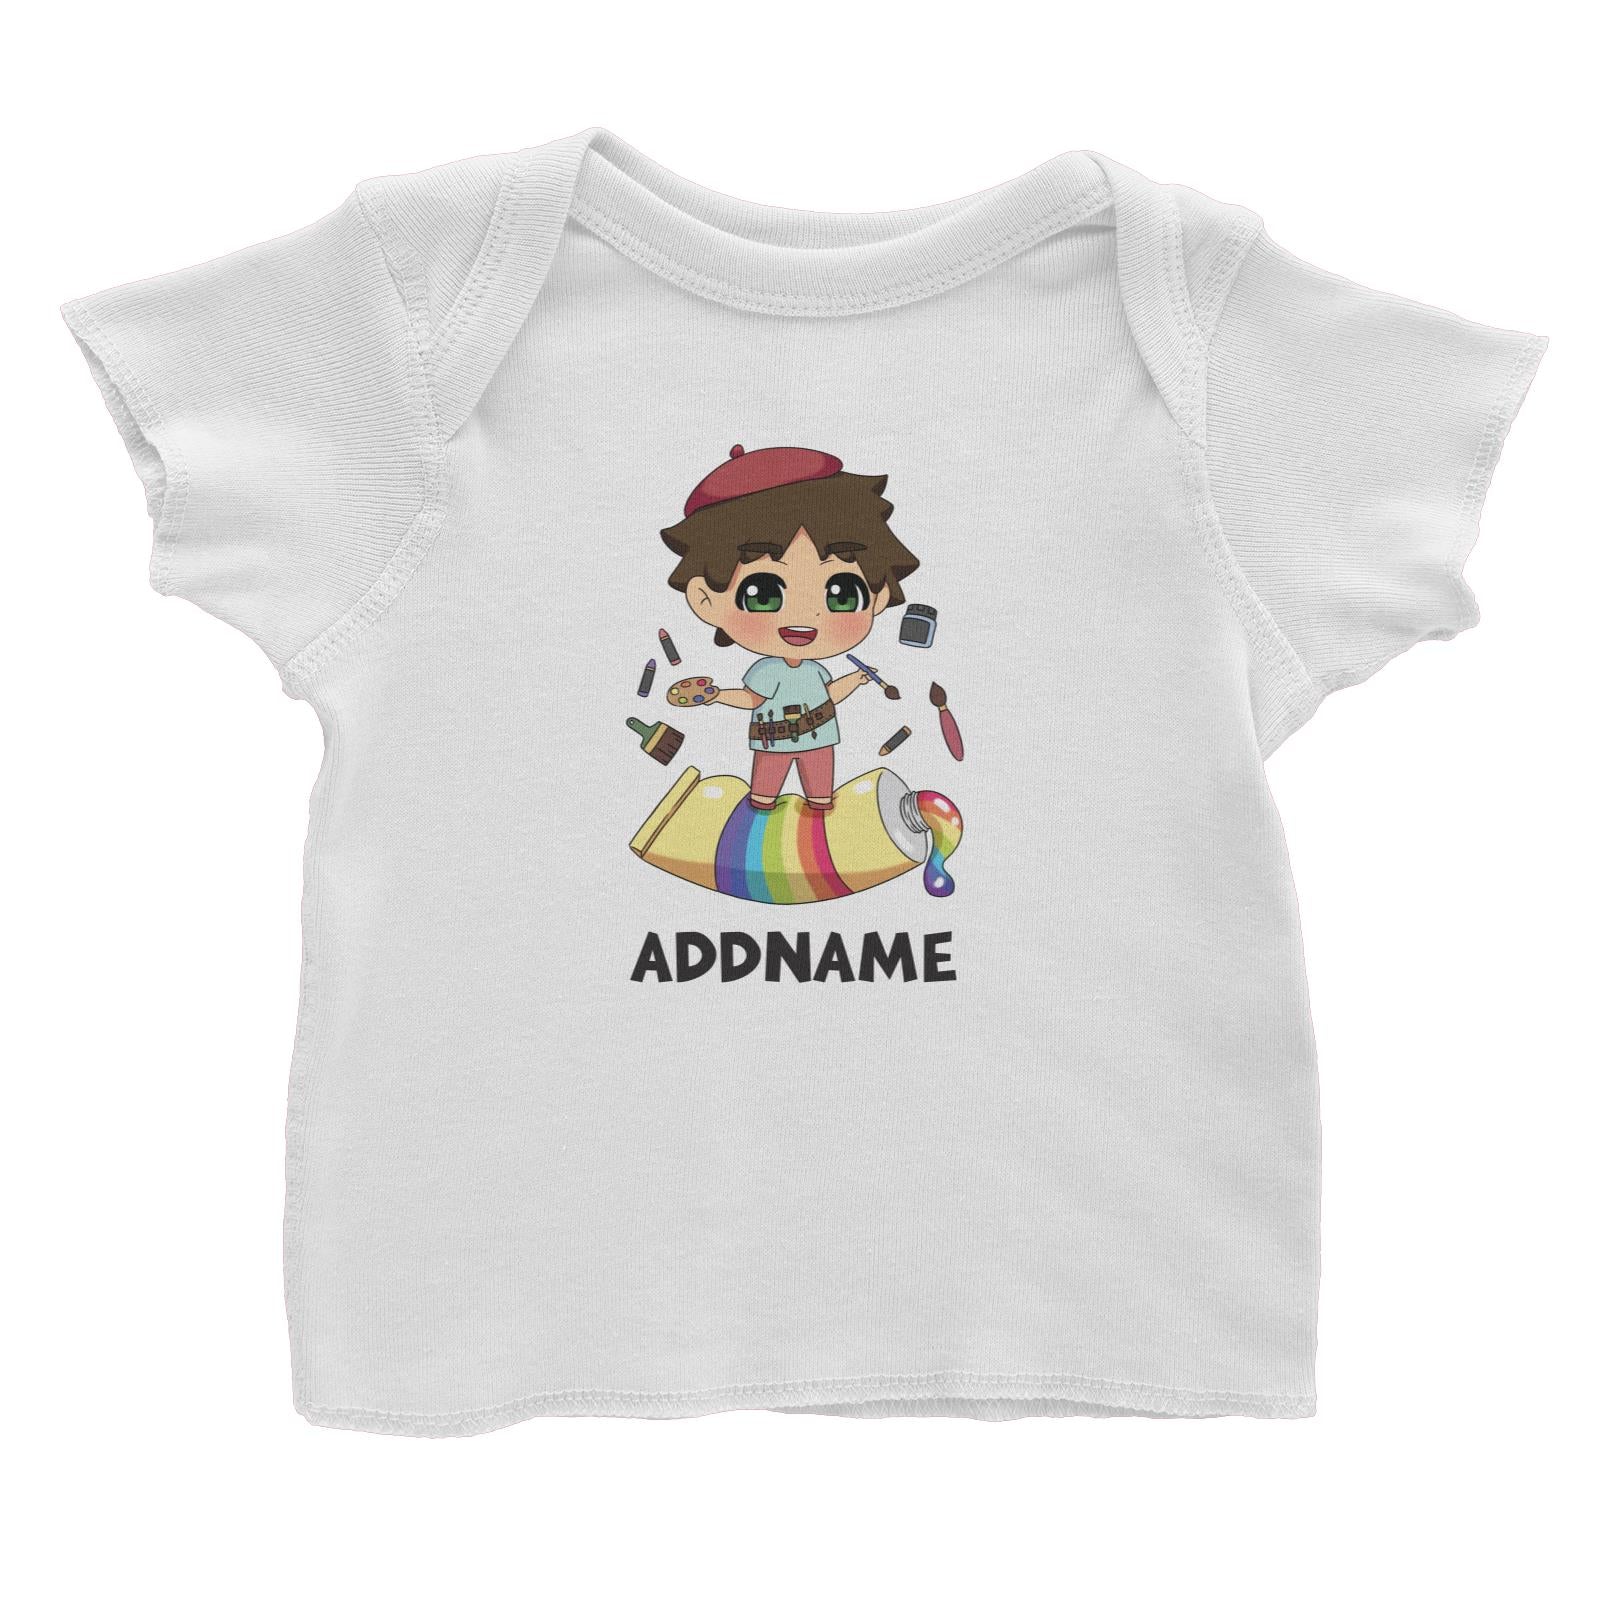 Children's Day Gift Series Artist Little Boy Addname Baby T-Shirt